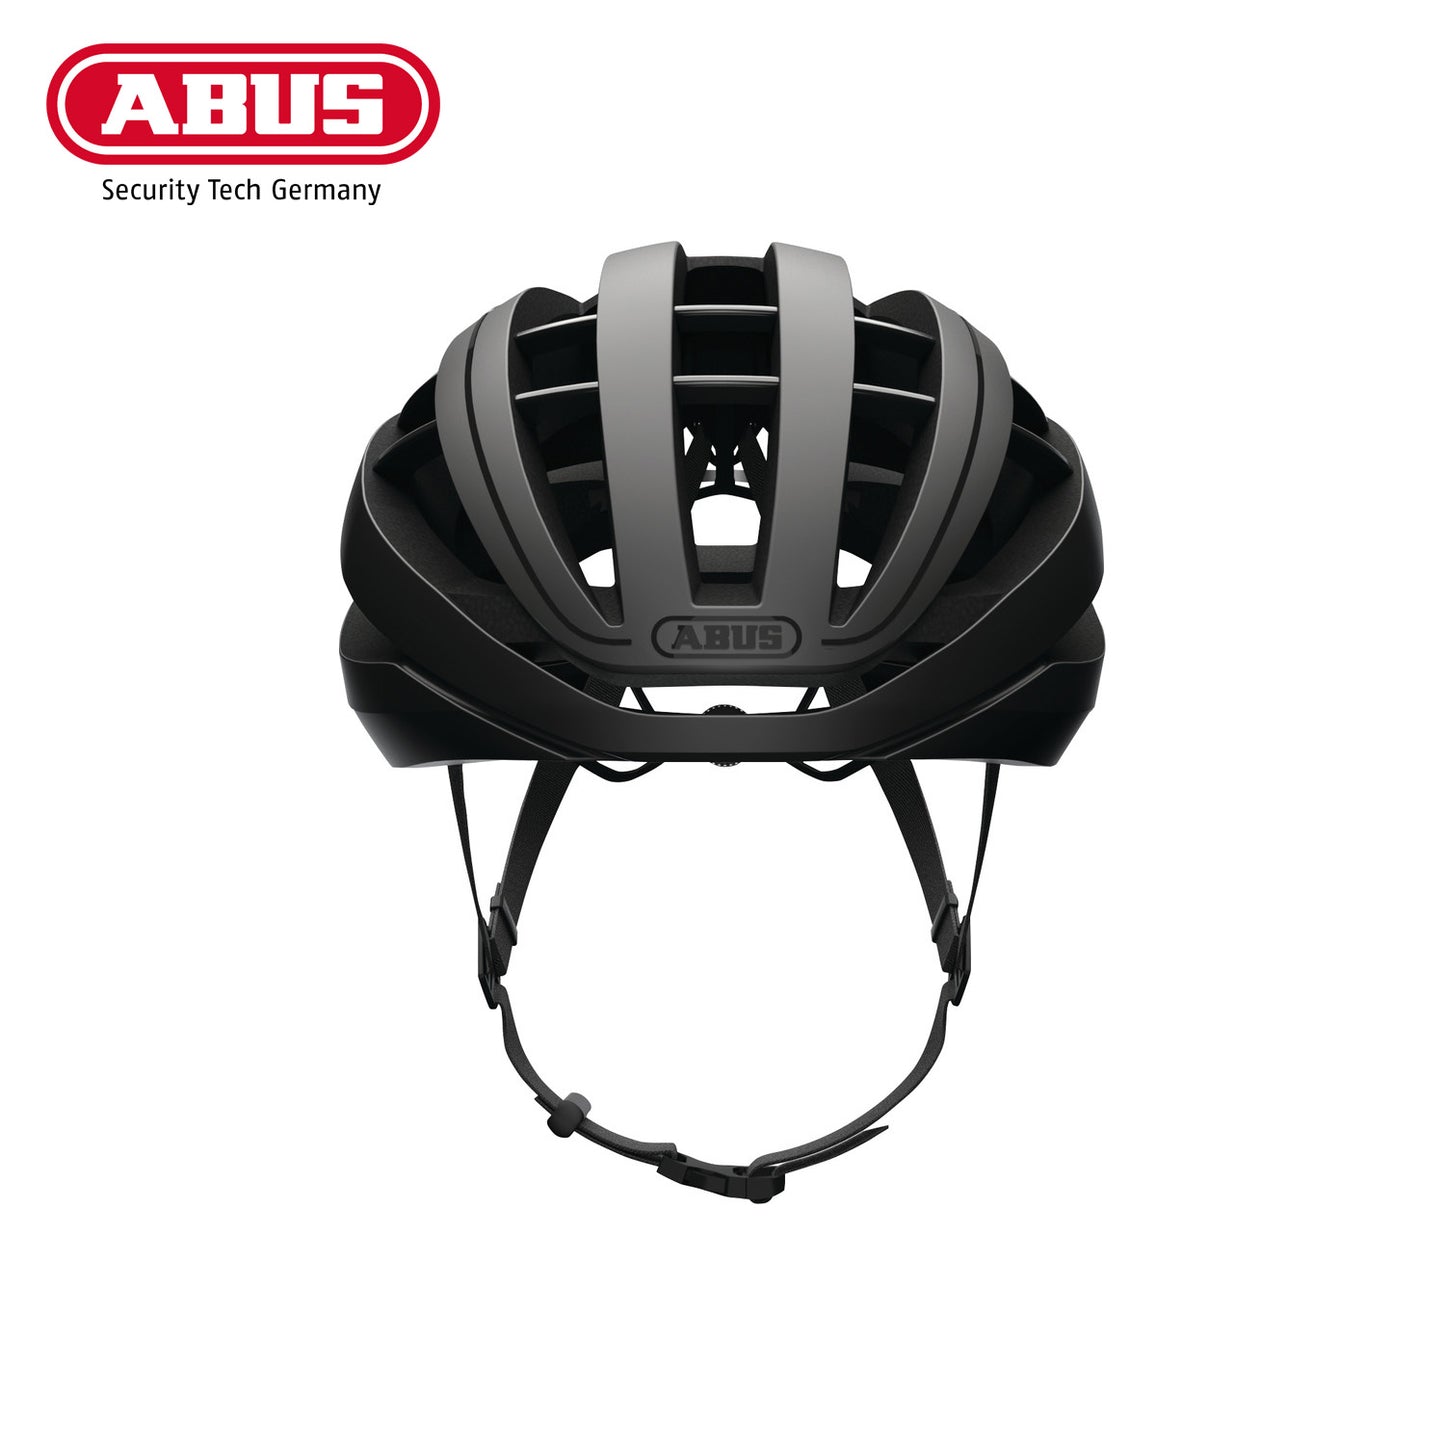 ABUS Road Helmet Aventor Bike Helmet - Velvet Black